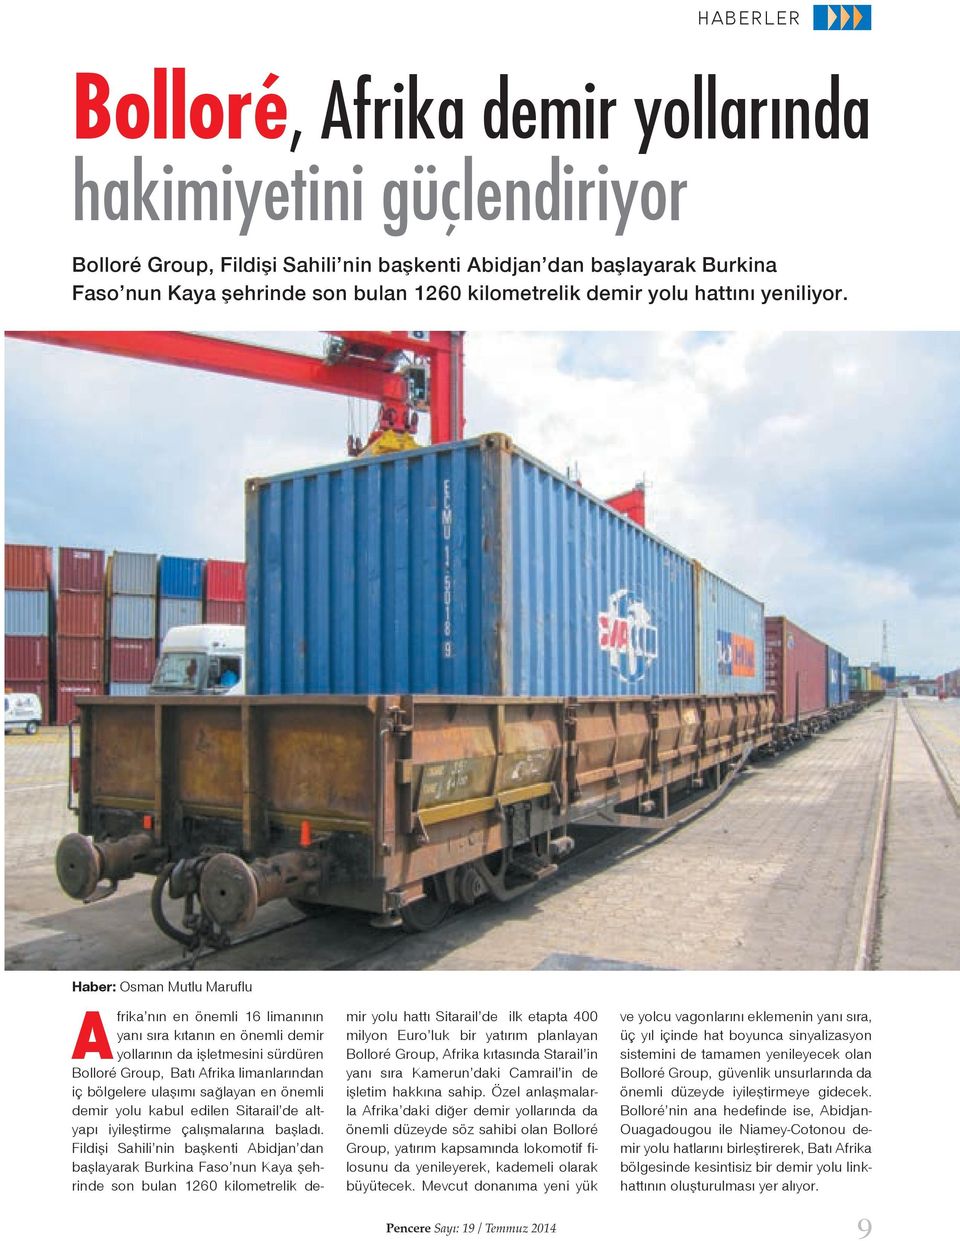 Haber: Osman Mutlu Maruflu Afrika nın en önemli 16 limanının yanı sıra kıtanın en önemli demir yollarının da işletmesini sürdüren Bolloré Group, Batı Afrika limanlarından iç bölgelere ulaşımı